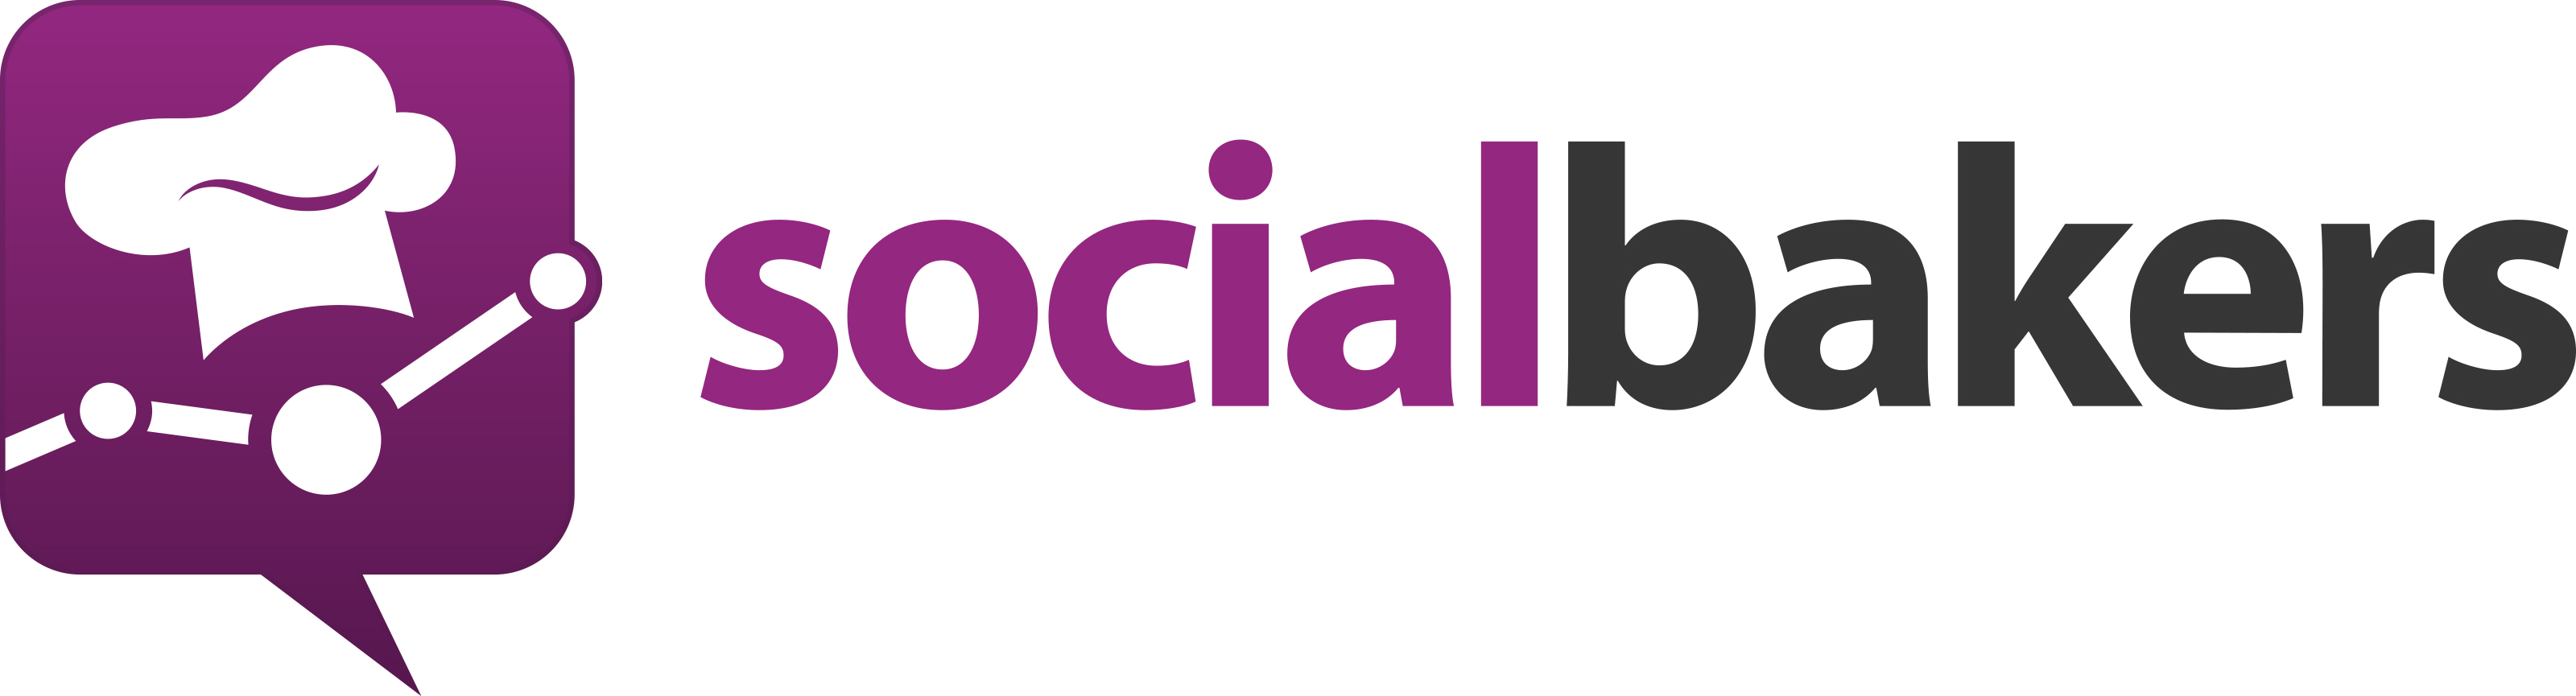 Socialbakers lance le benchmark de performances des vidéos sur les médias sociaux